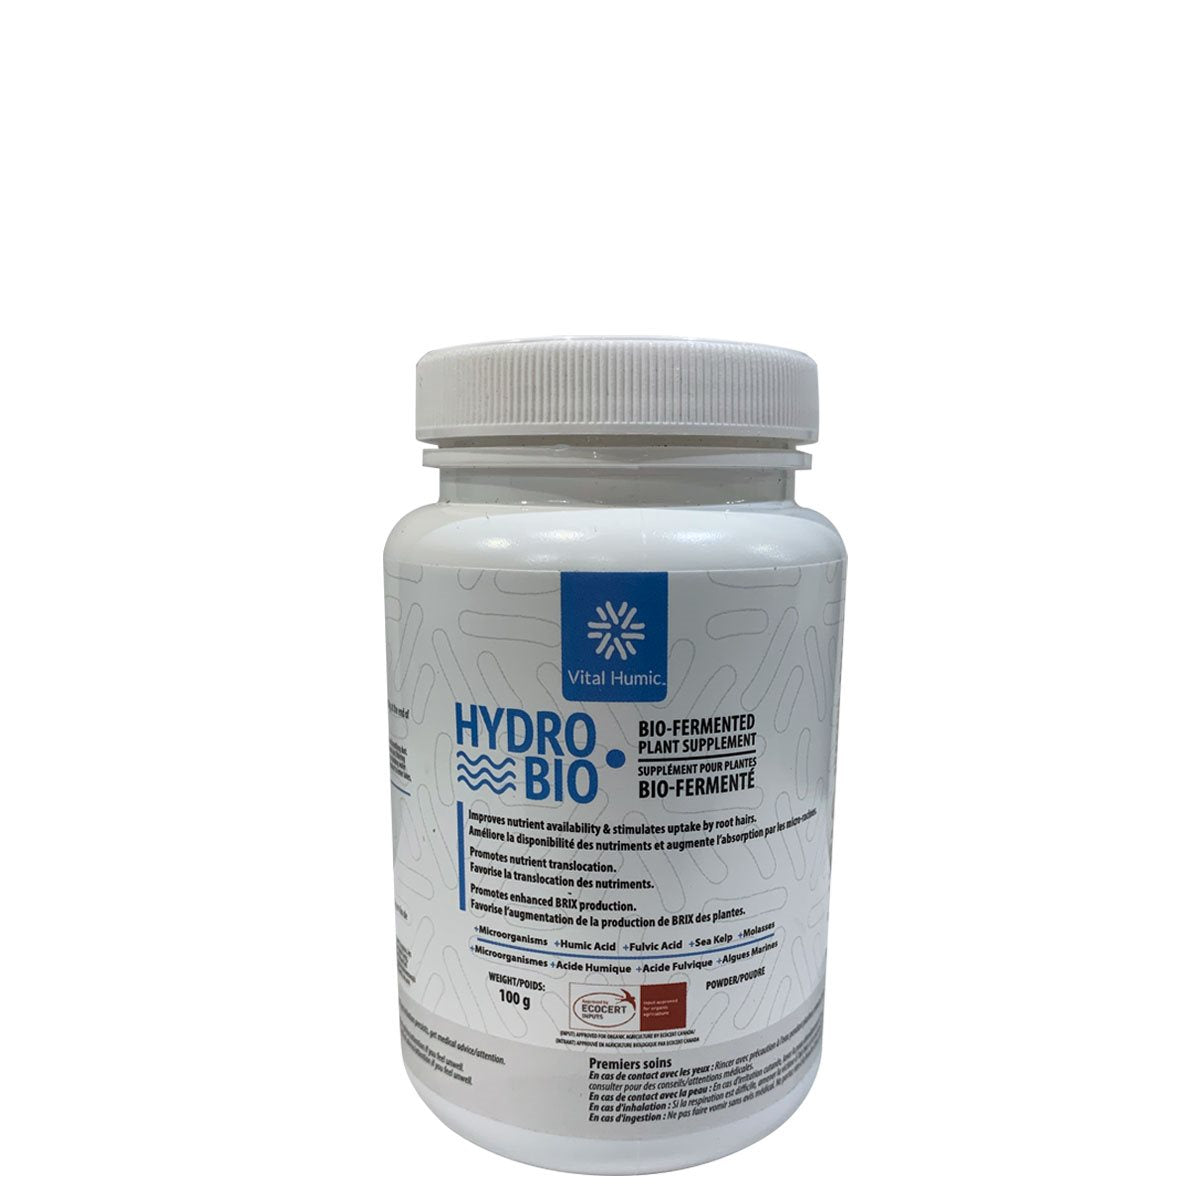 Product Image:Vital Humic Hydro Bio